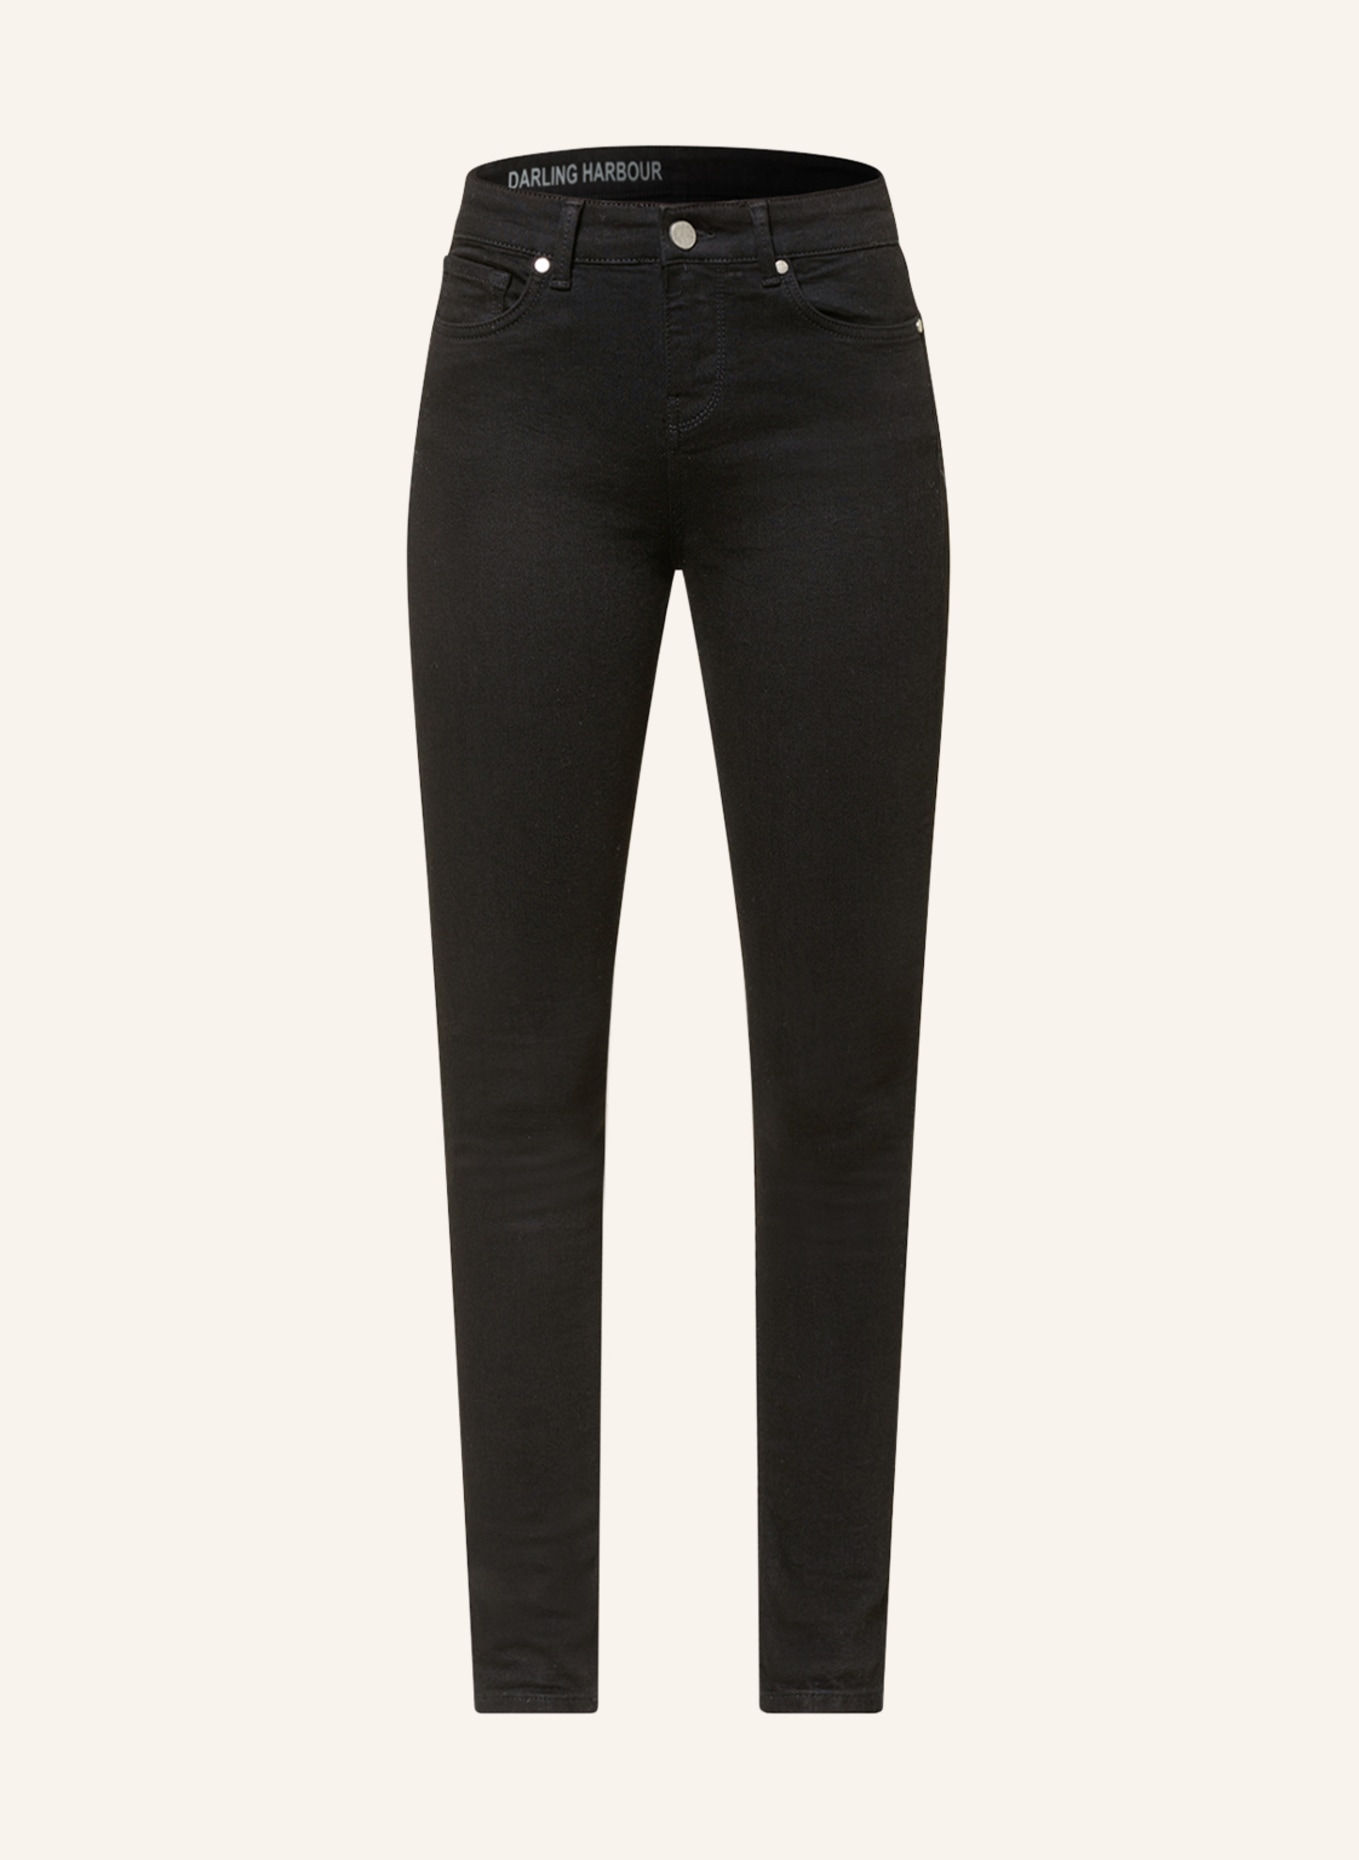 darling harbour Skinny jeans, Color: BLACK (Image 1)